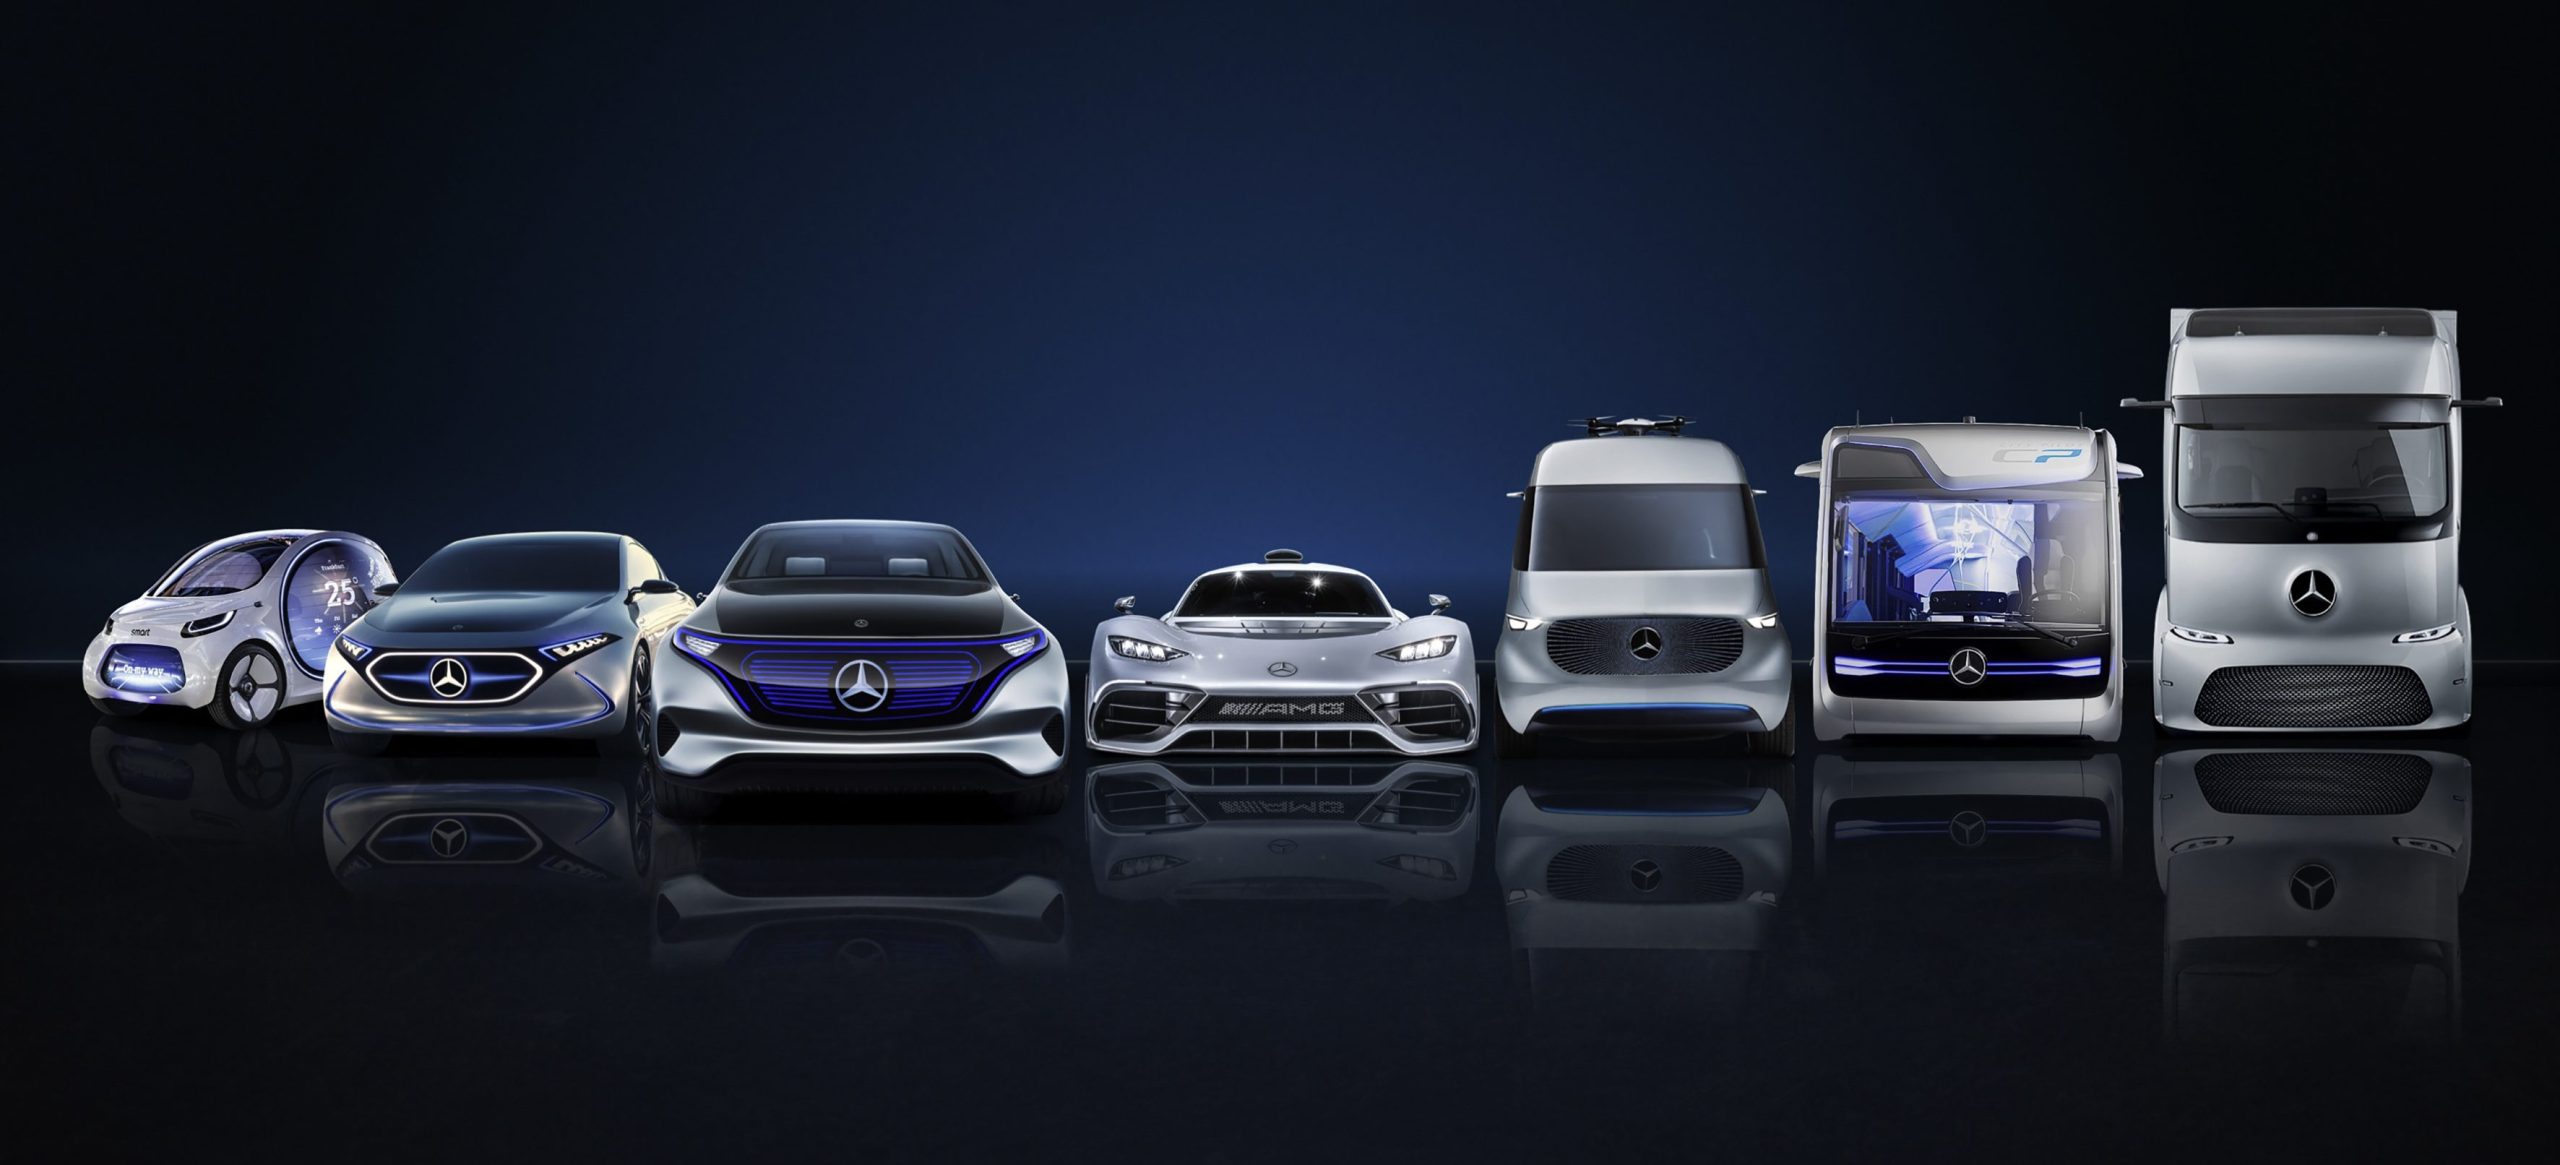 Daimler teatab 85,000 XNUMX miljardi dollari suurusest investeeringust, et kiirendada oma sõidukite elektrifitseerimist.